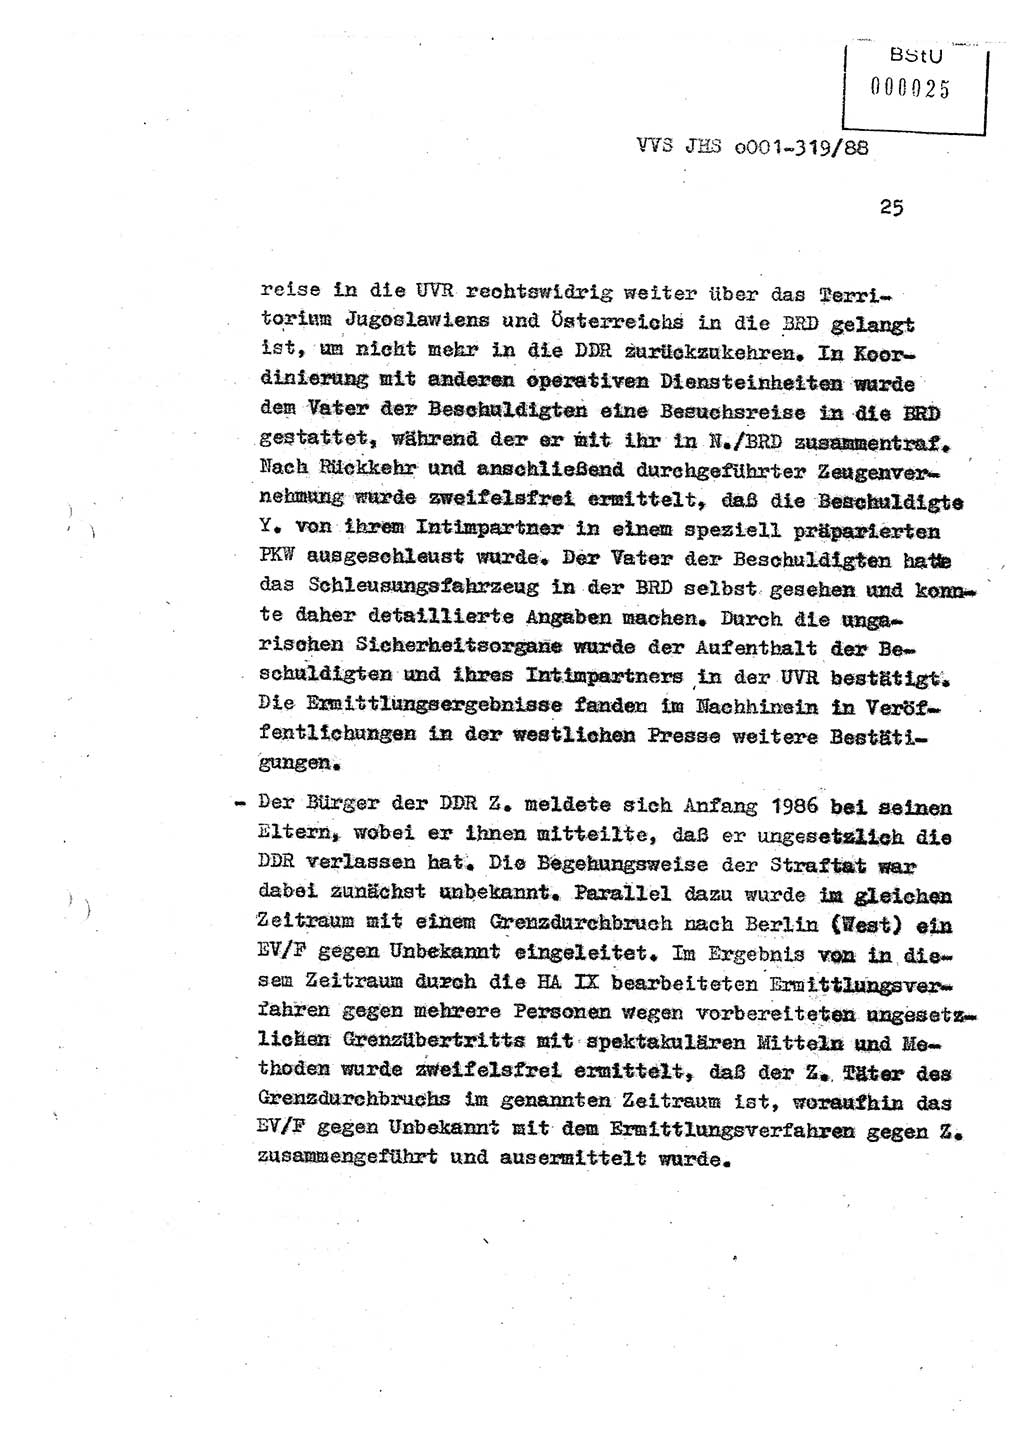 Diplomarbeit Offiziersschüler Holger Zirnstein (HA Ⅸ/9), Ministerium für Staatssicherheit (MfS) [Deutsche Demokratische Republik (DDR)], Juristische Hochschule (JHS), Vertrauliche Verschlußsache (VVS) o001-319/88, Potsdam 1988, Blatt 25 (Dipl.-Arb. MfS DDR JHS VVS o001-319/88 1988, Bl. 25)